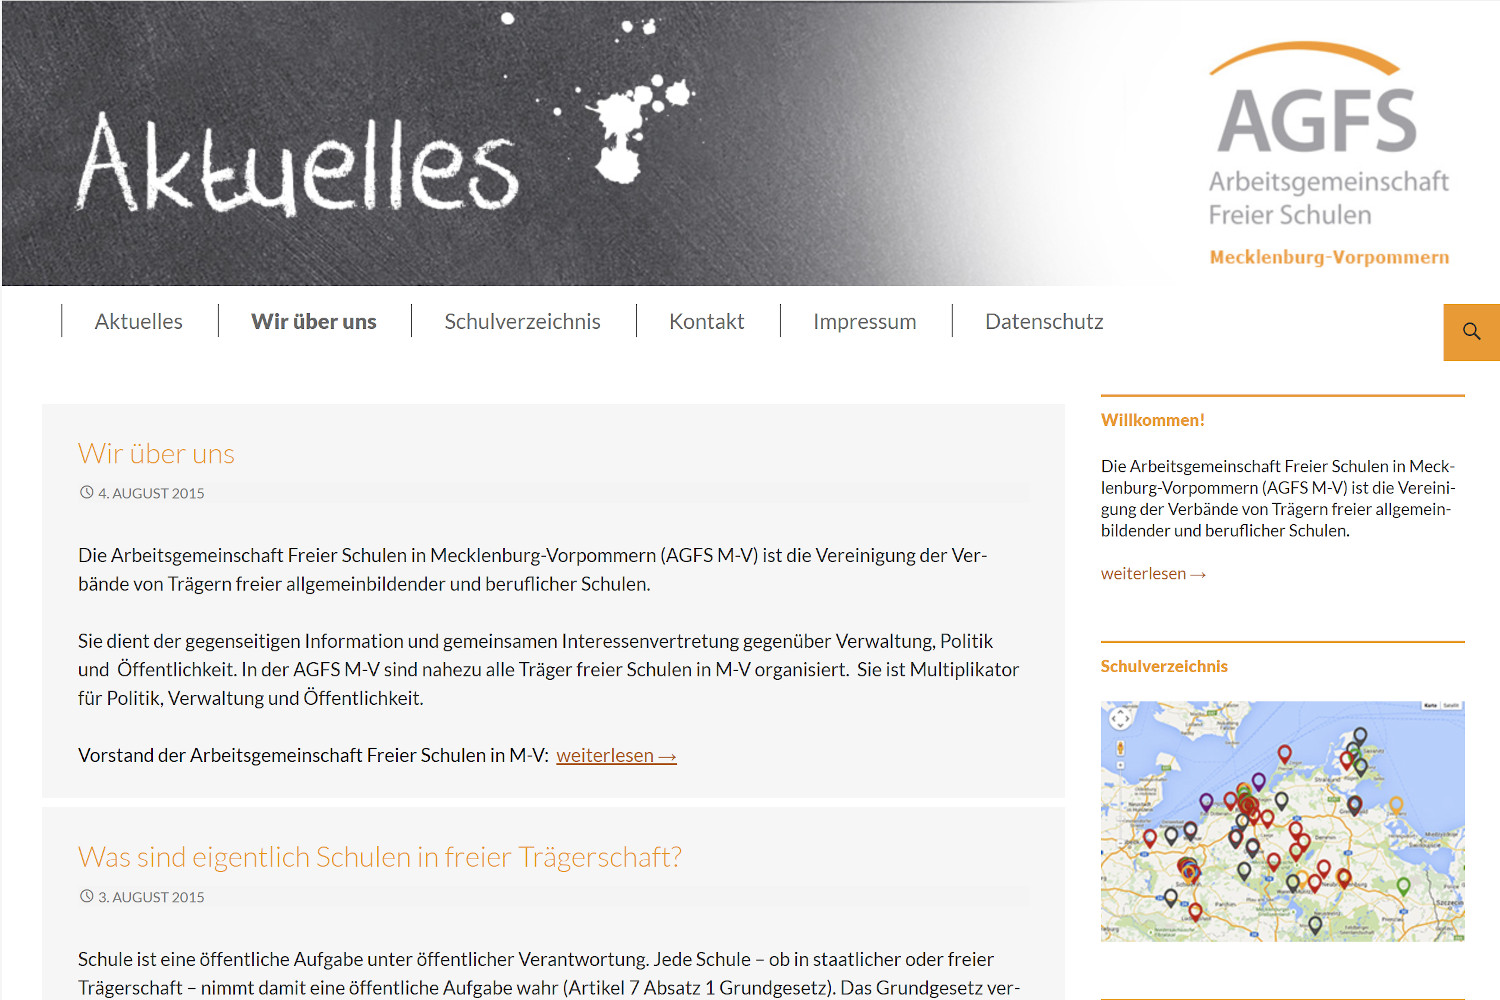 Das Bild zeigt ein Bildschirmfoto der Webseite der Arbeitsgemeinschaft freier Schulen Mecklenburg-Vorpommern www.freie-schulen-mv.de